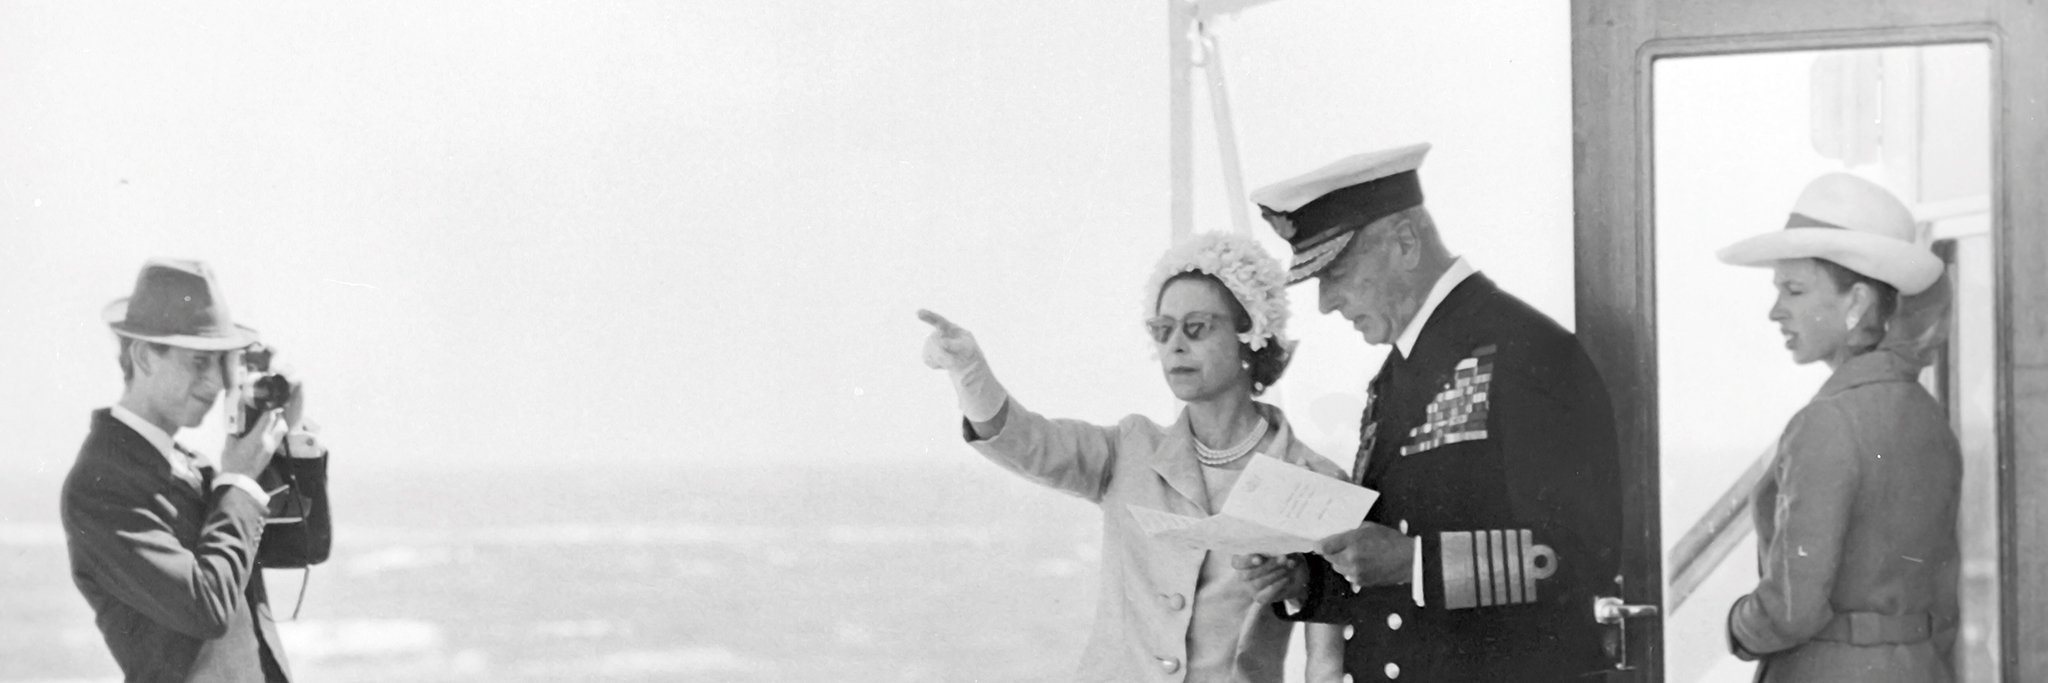 Als Oberhaupt einer Seefahrernation hatte Königin Elizabeth II. schon von Berufs wegen zeit ihres Lebens eine enge Verbindung zum Meer. Hier ist sie im Jahr 1969 mit ihrem damaligen Flottenadmiral, Lord Louis Mountbatten, an Bord der königlichen Yacht Britannia 